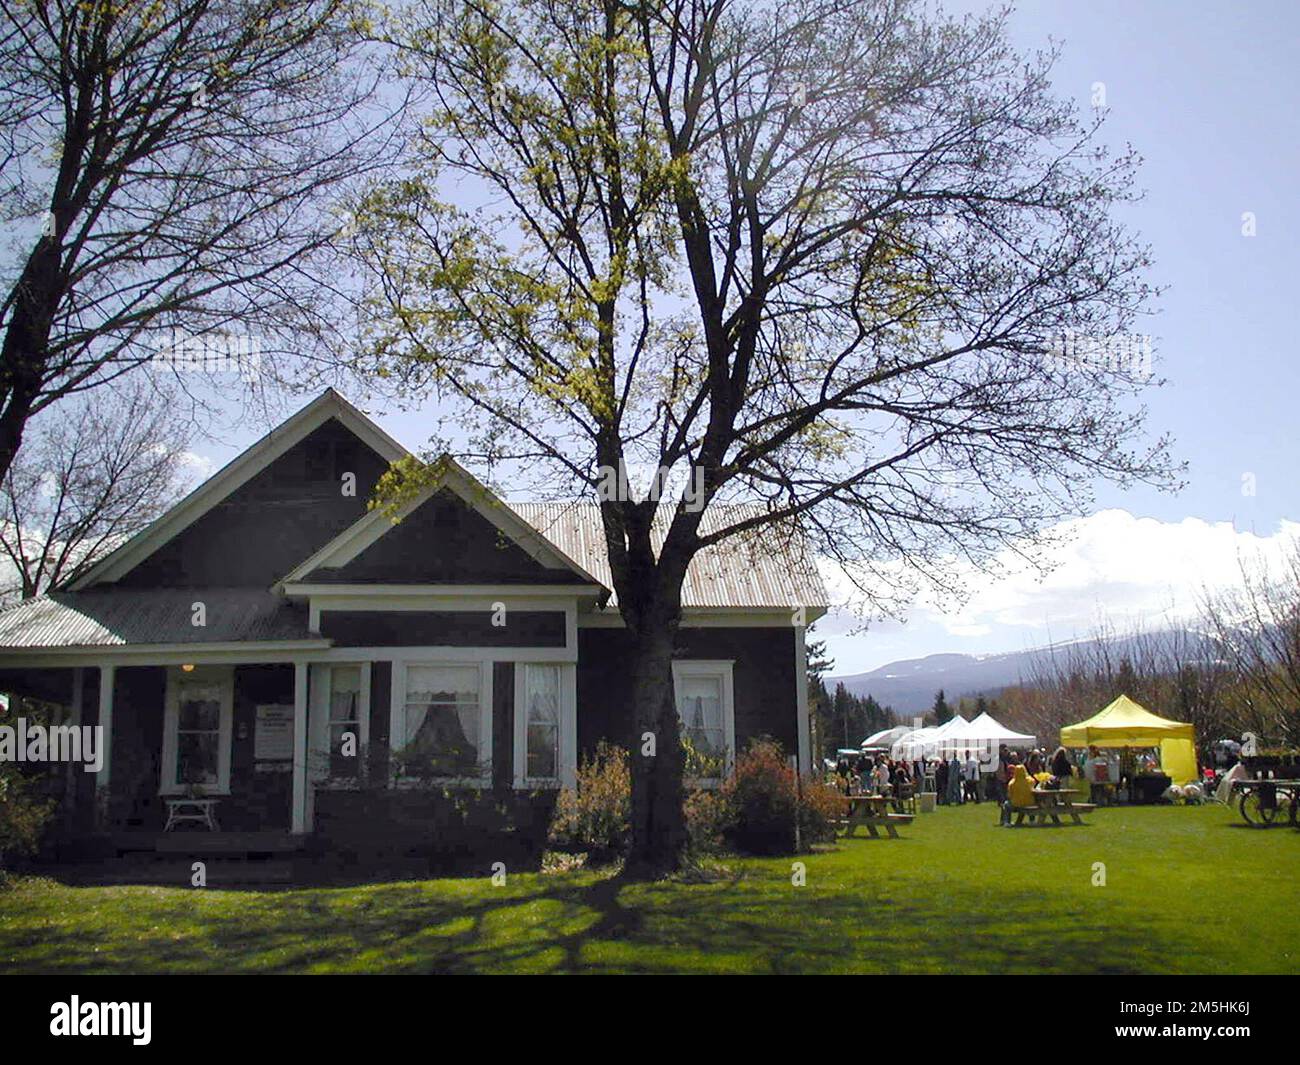 Mt. Hood Scenic Byway - Musée Hutson. Construit en 1993 pour correspondre au style de la maison voisine de Ries-Thompson, la plus ancienne résidence restante à Parkdale, le Musée est situé sur le complexe de 2 hectares désigné lieu historique national. Emplacement : Parkdale, Oregon (45,520° N 121,597° O) Banque D'Images